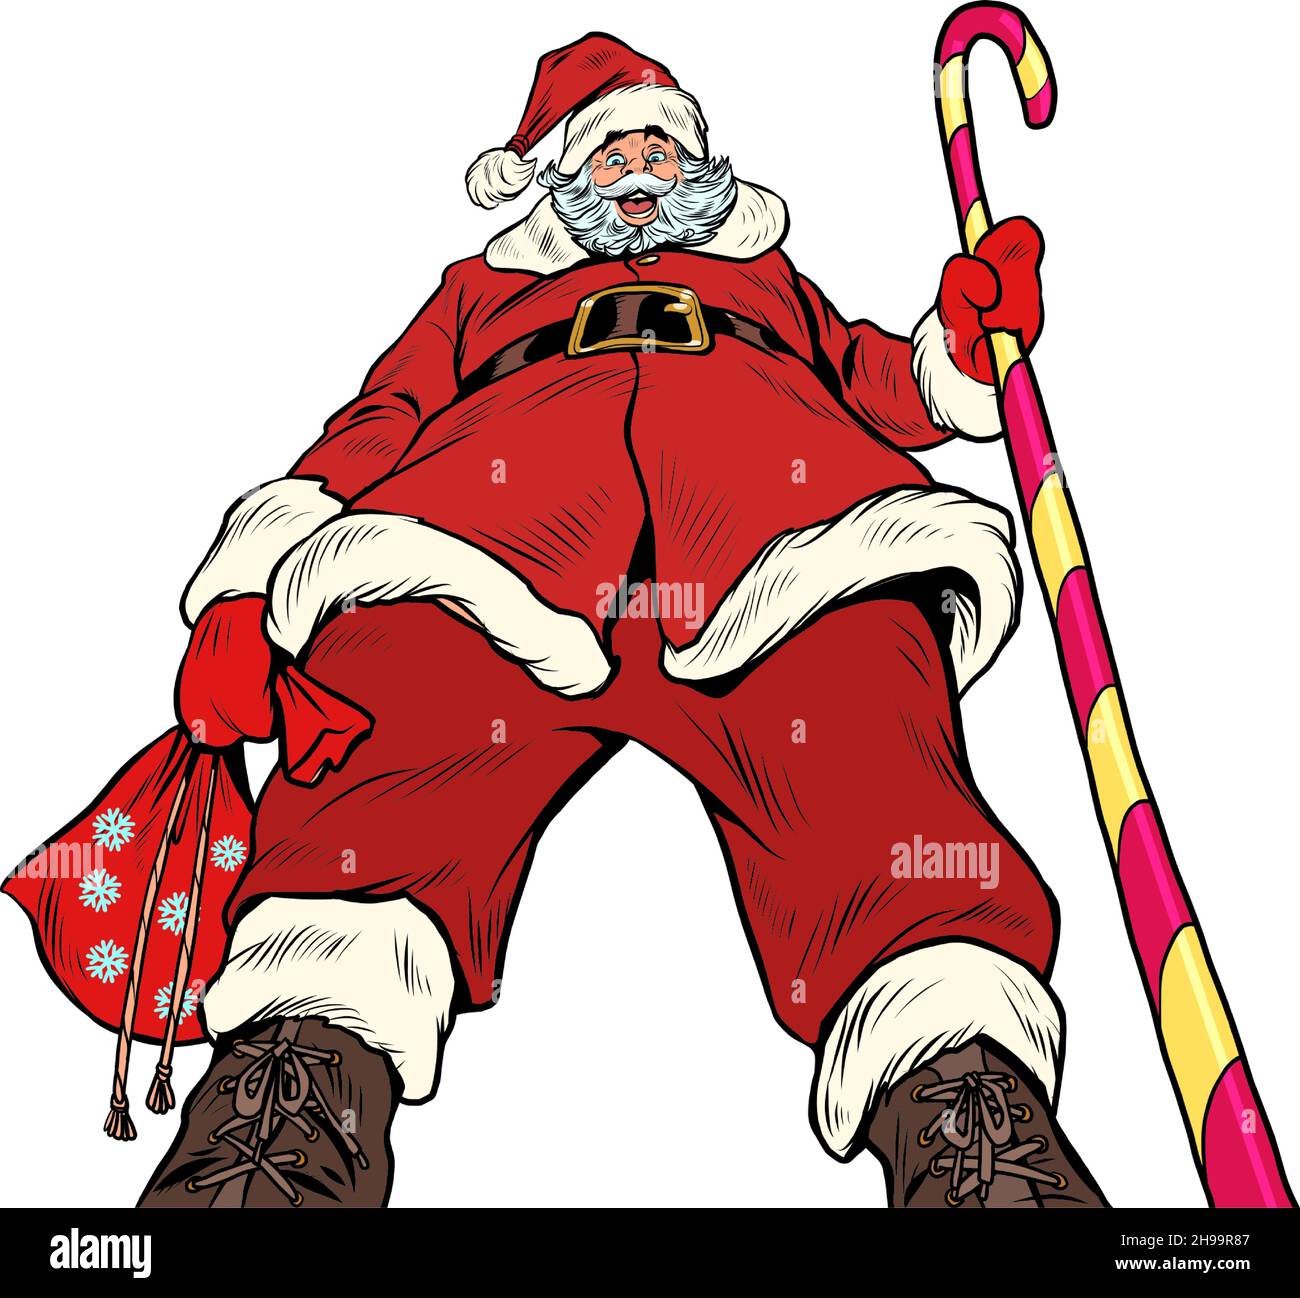 Vista de abajo hacia arriba de Santa Claus pretenciosa. Navidad y Año Nuevo, vacaciones de temporada de invierno en diciembre Ilustración del Vector